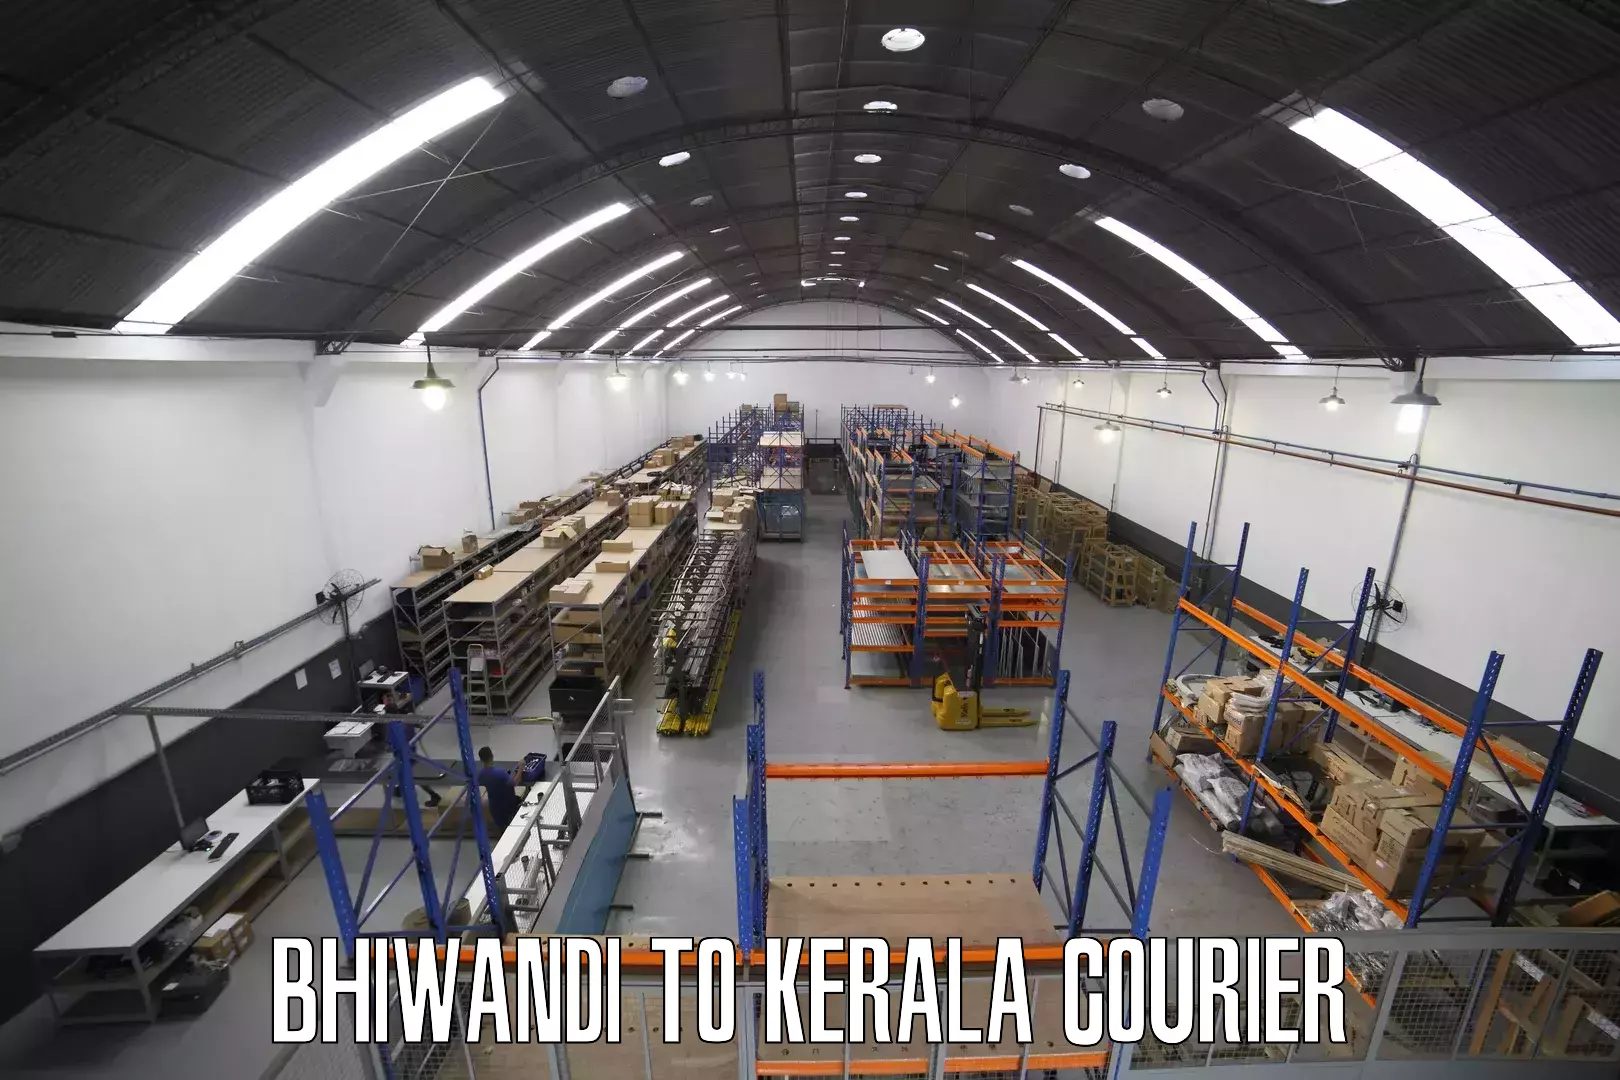 Courier app Bhiwandi to Kallikkad